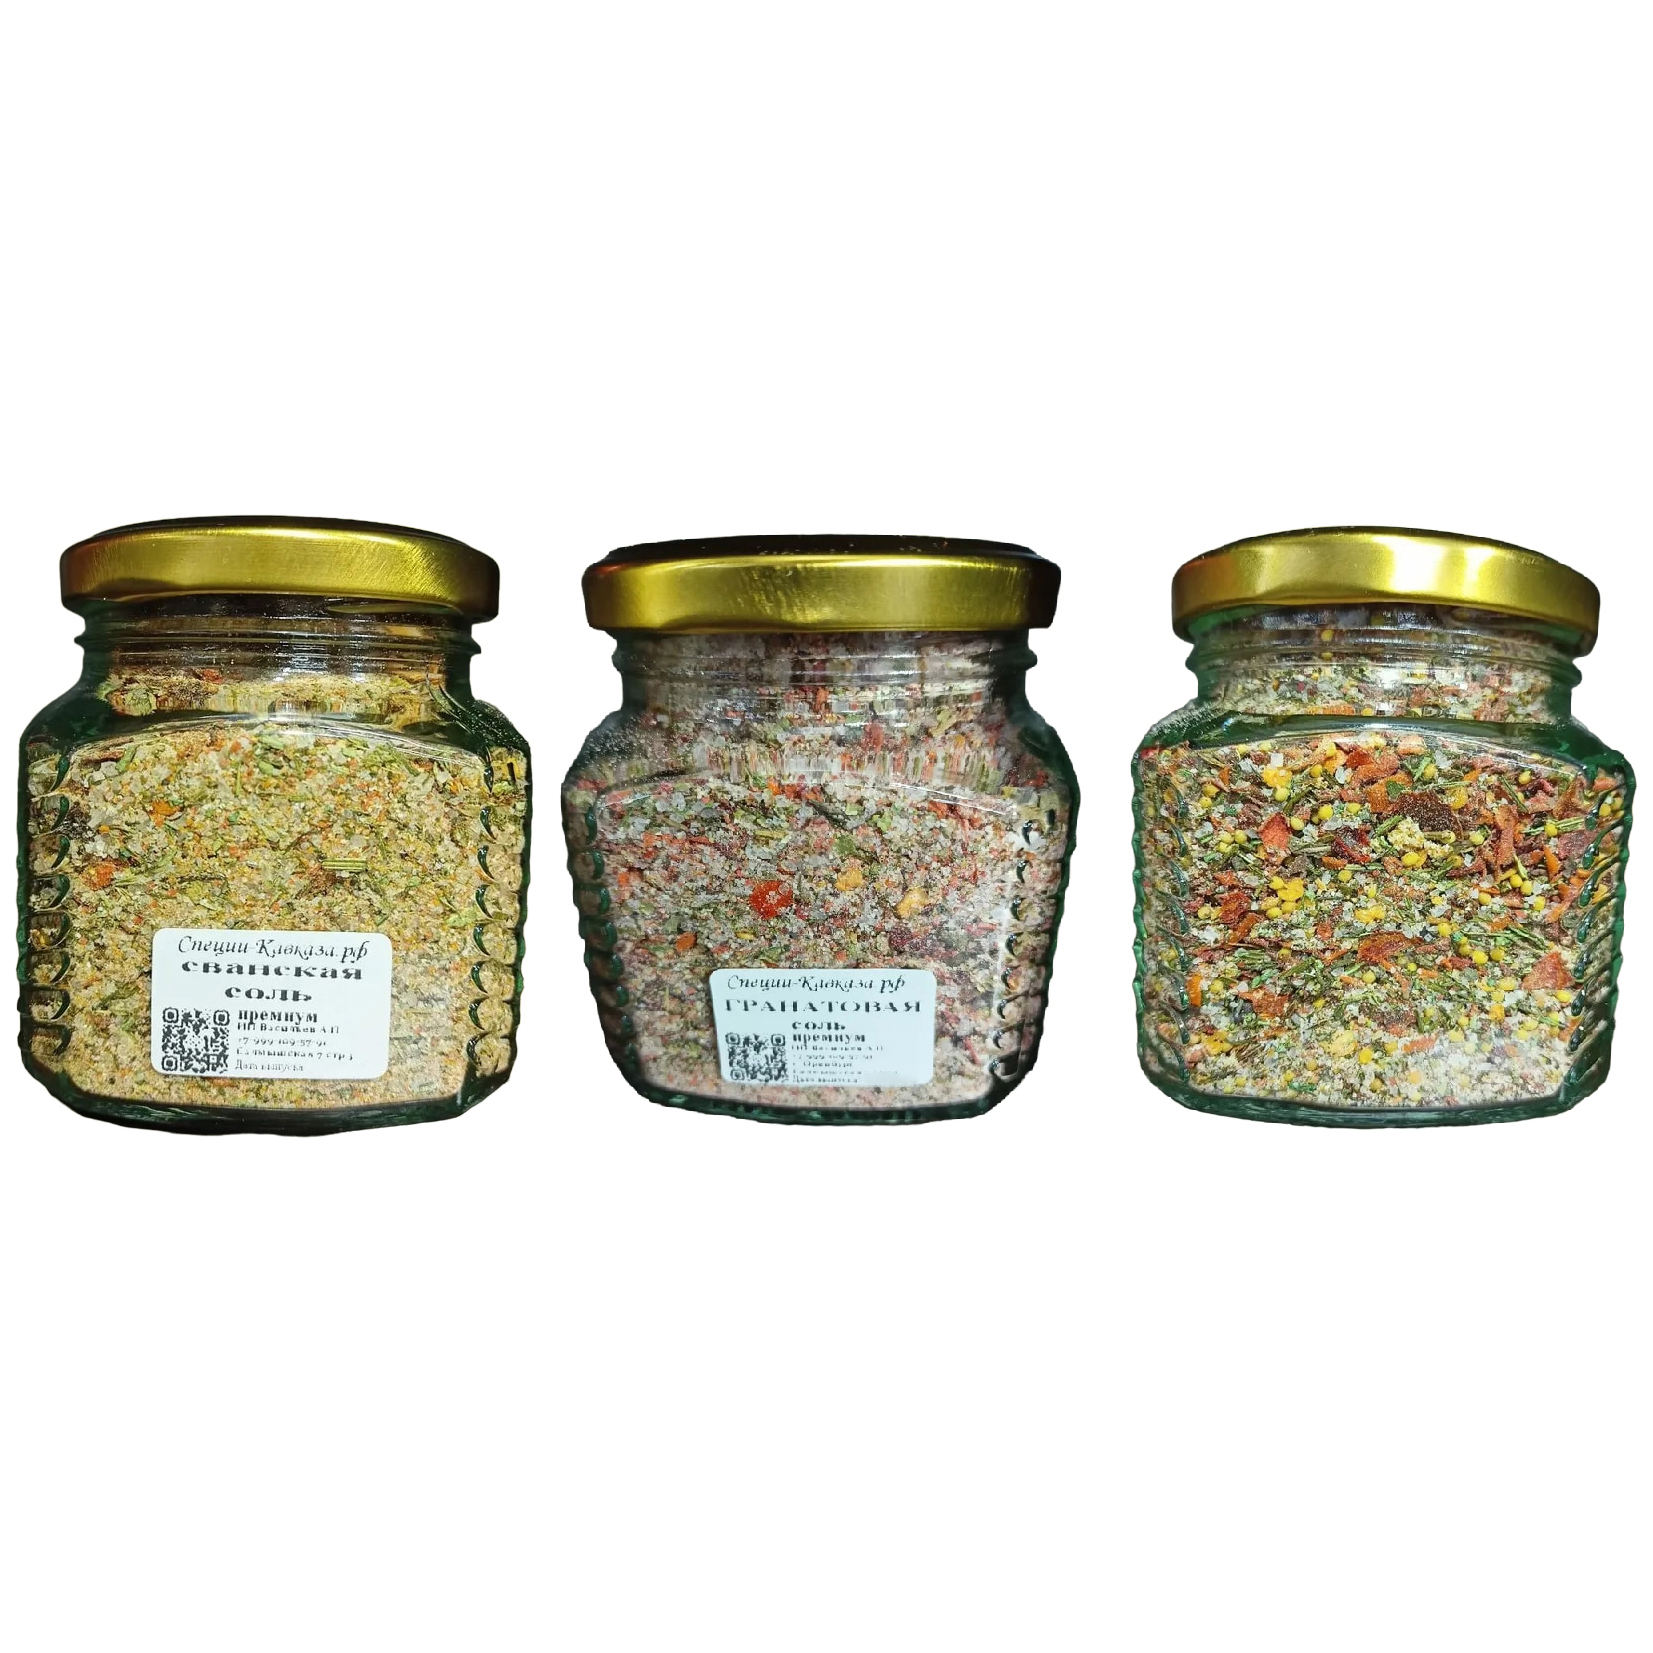 Набор 3 соли премиум качества с производства: гранатовая, сванская, мексиканская